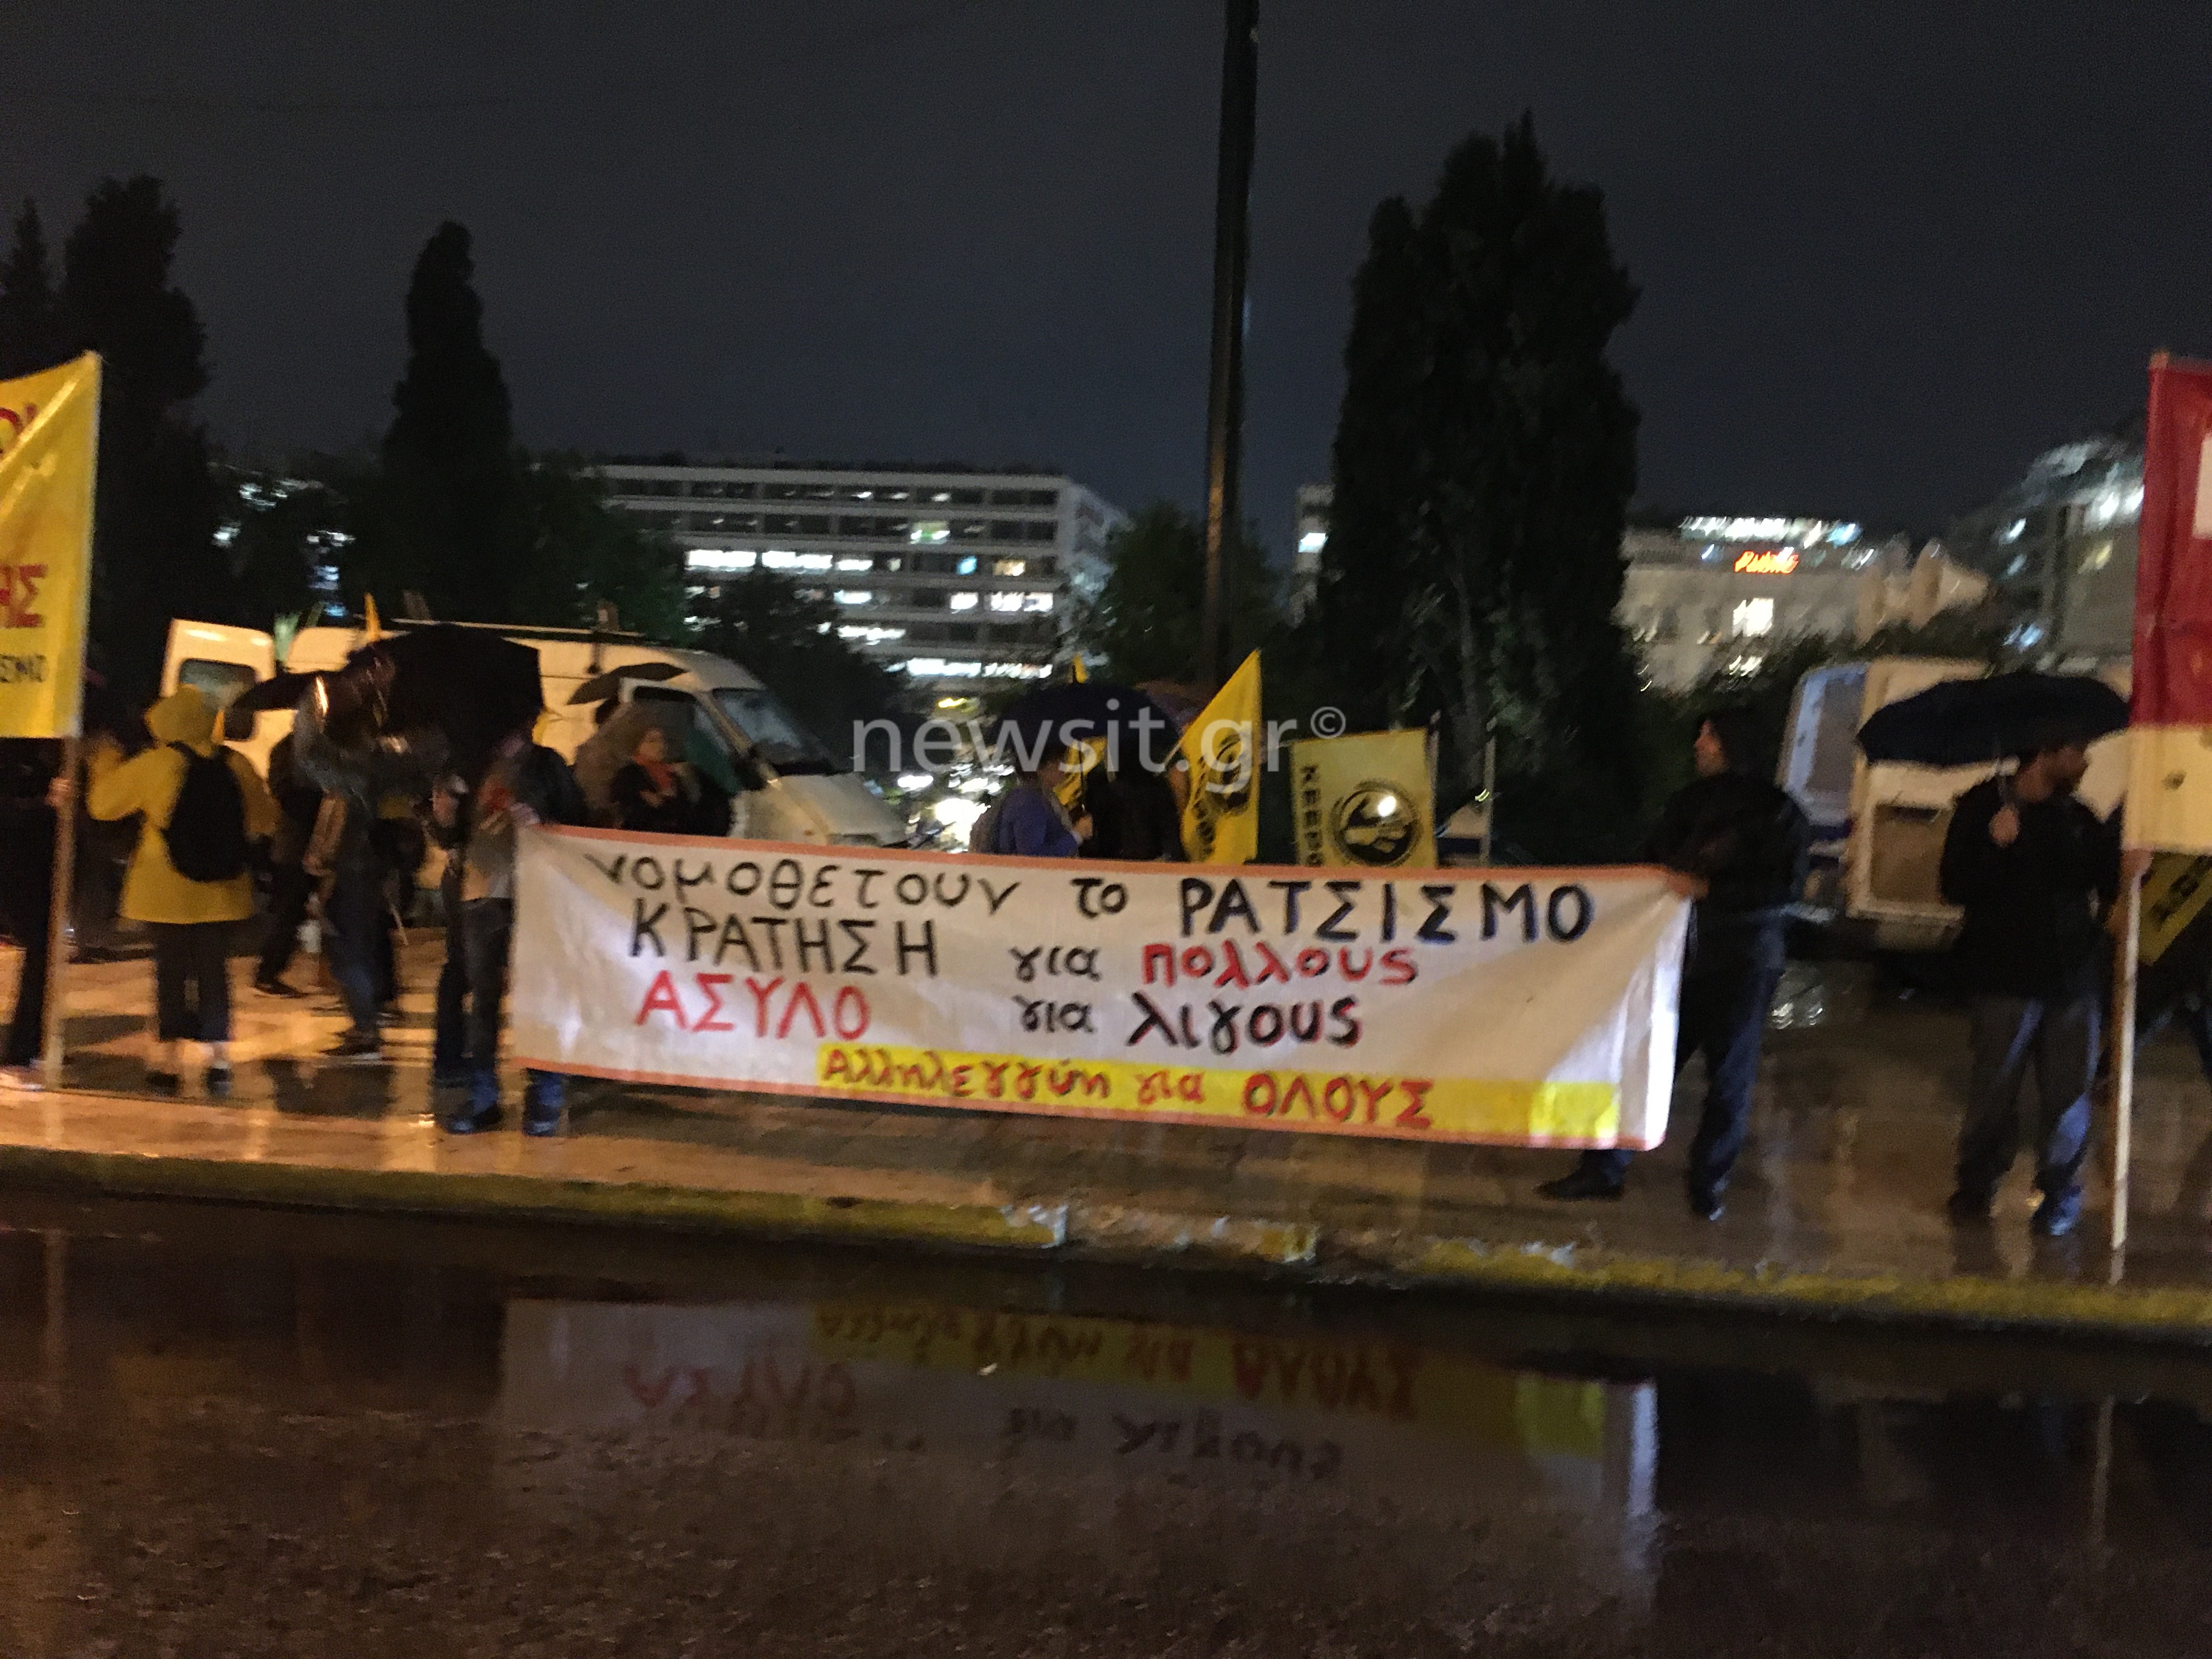 Αντιρατσιστικό συλλαλητήριο στο κέντρο της Αθήνας για το άσυλο